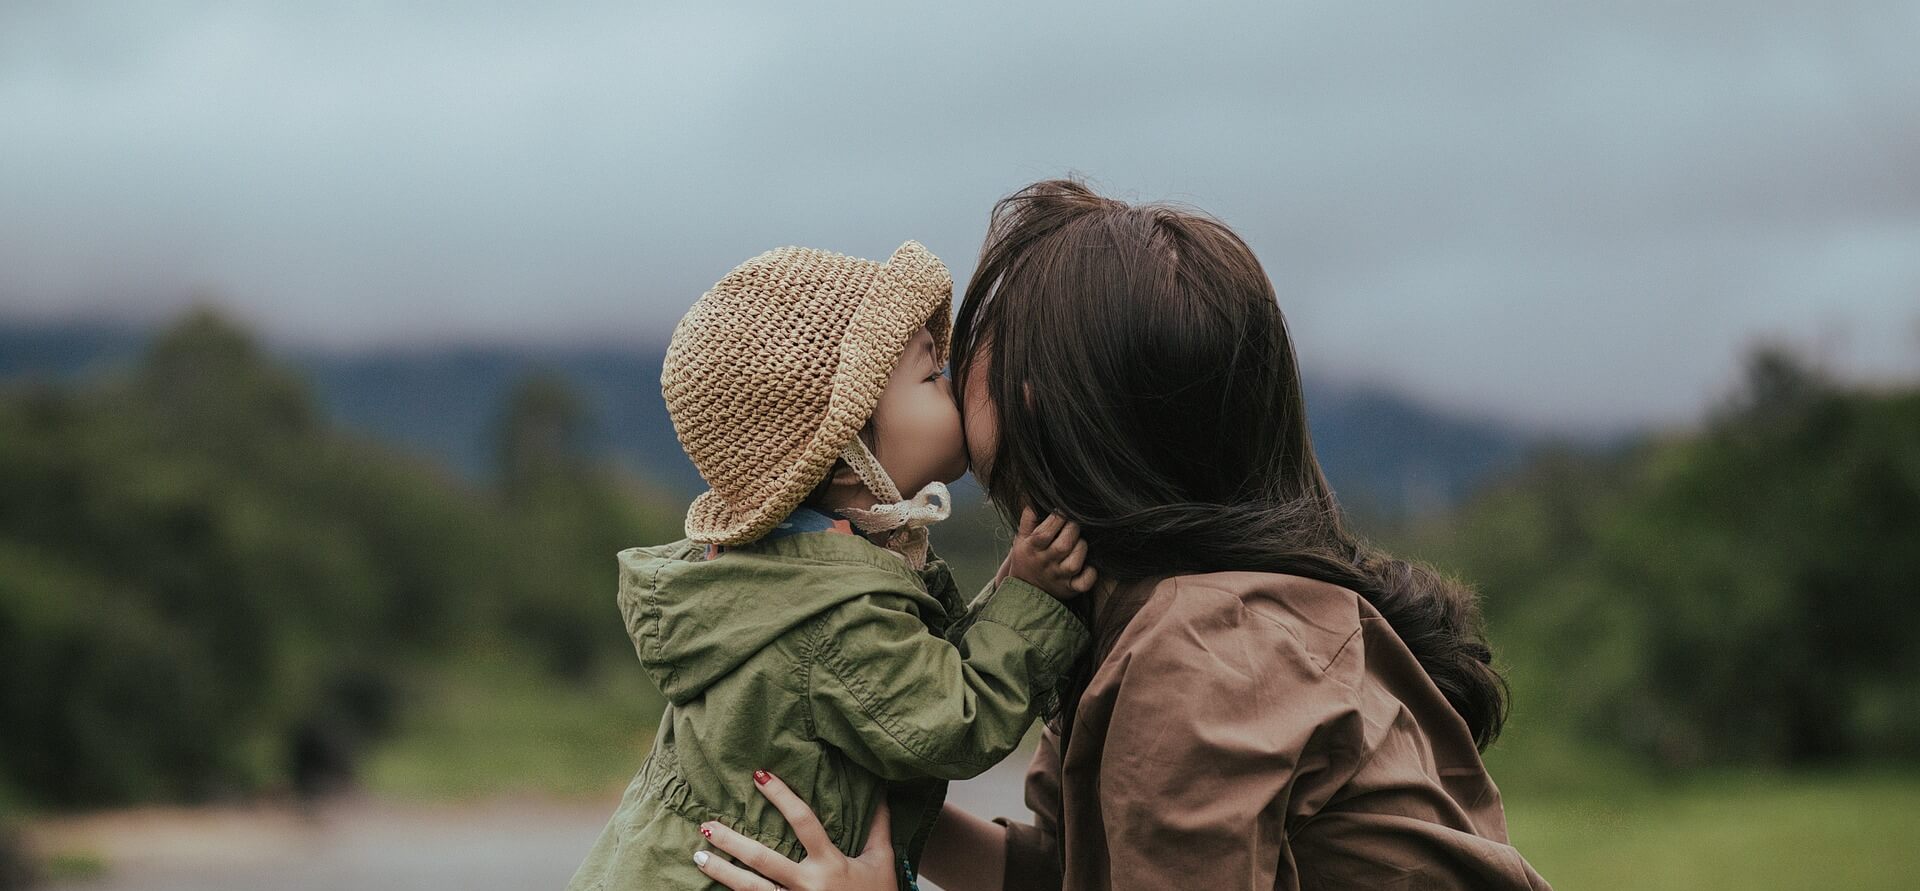 https://pixabay.com/photos/mother-daughter-kiss-parent-child-6935336/